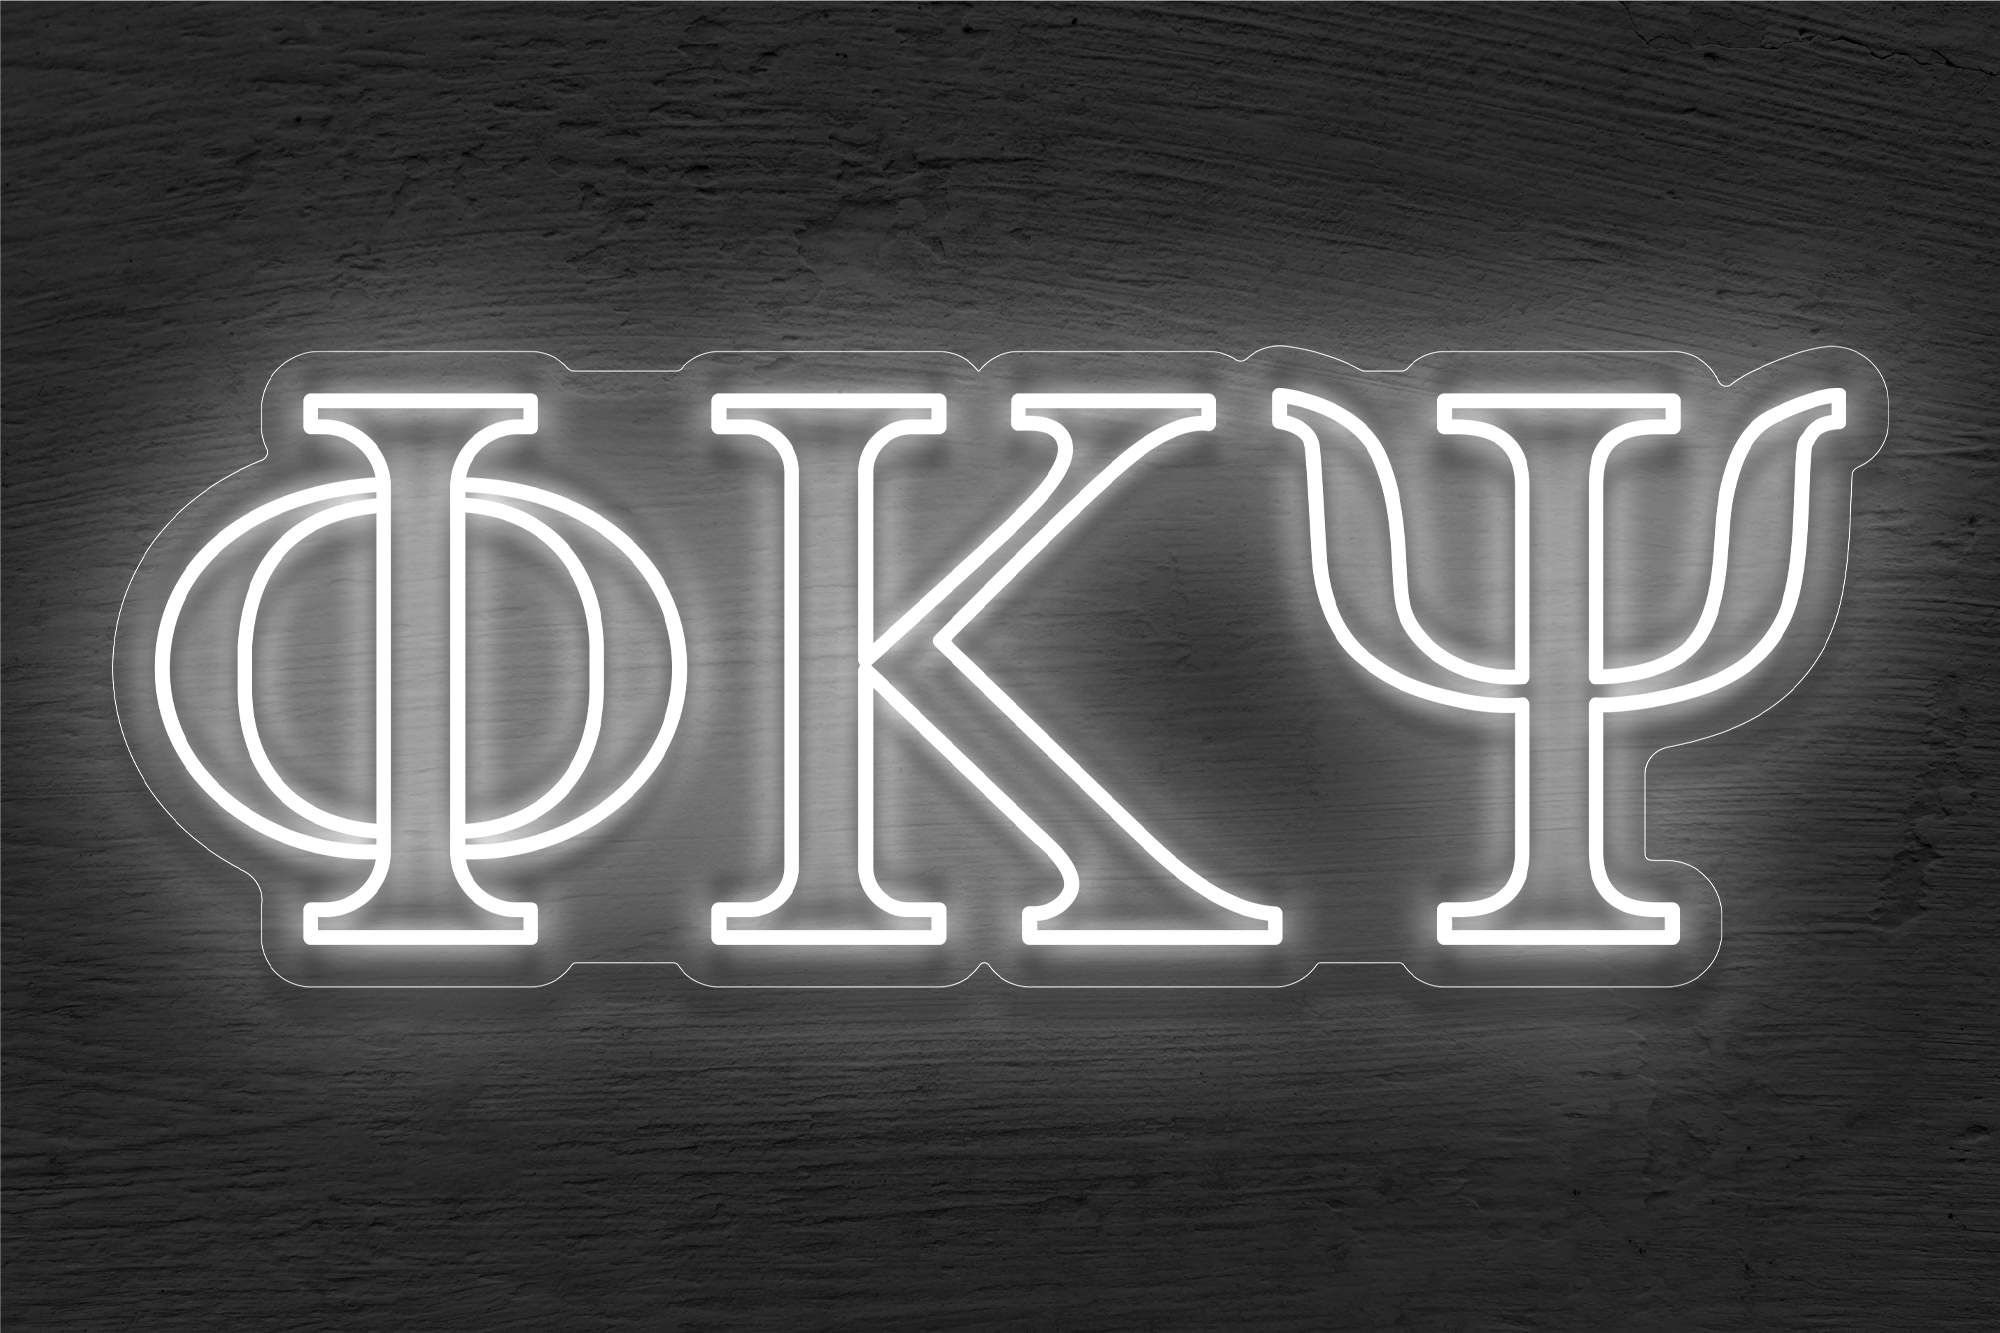 Phi Kappa Psi LED Neon Sign